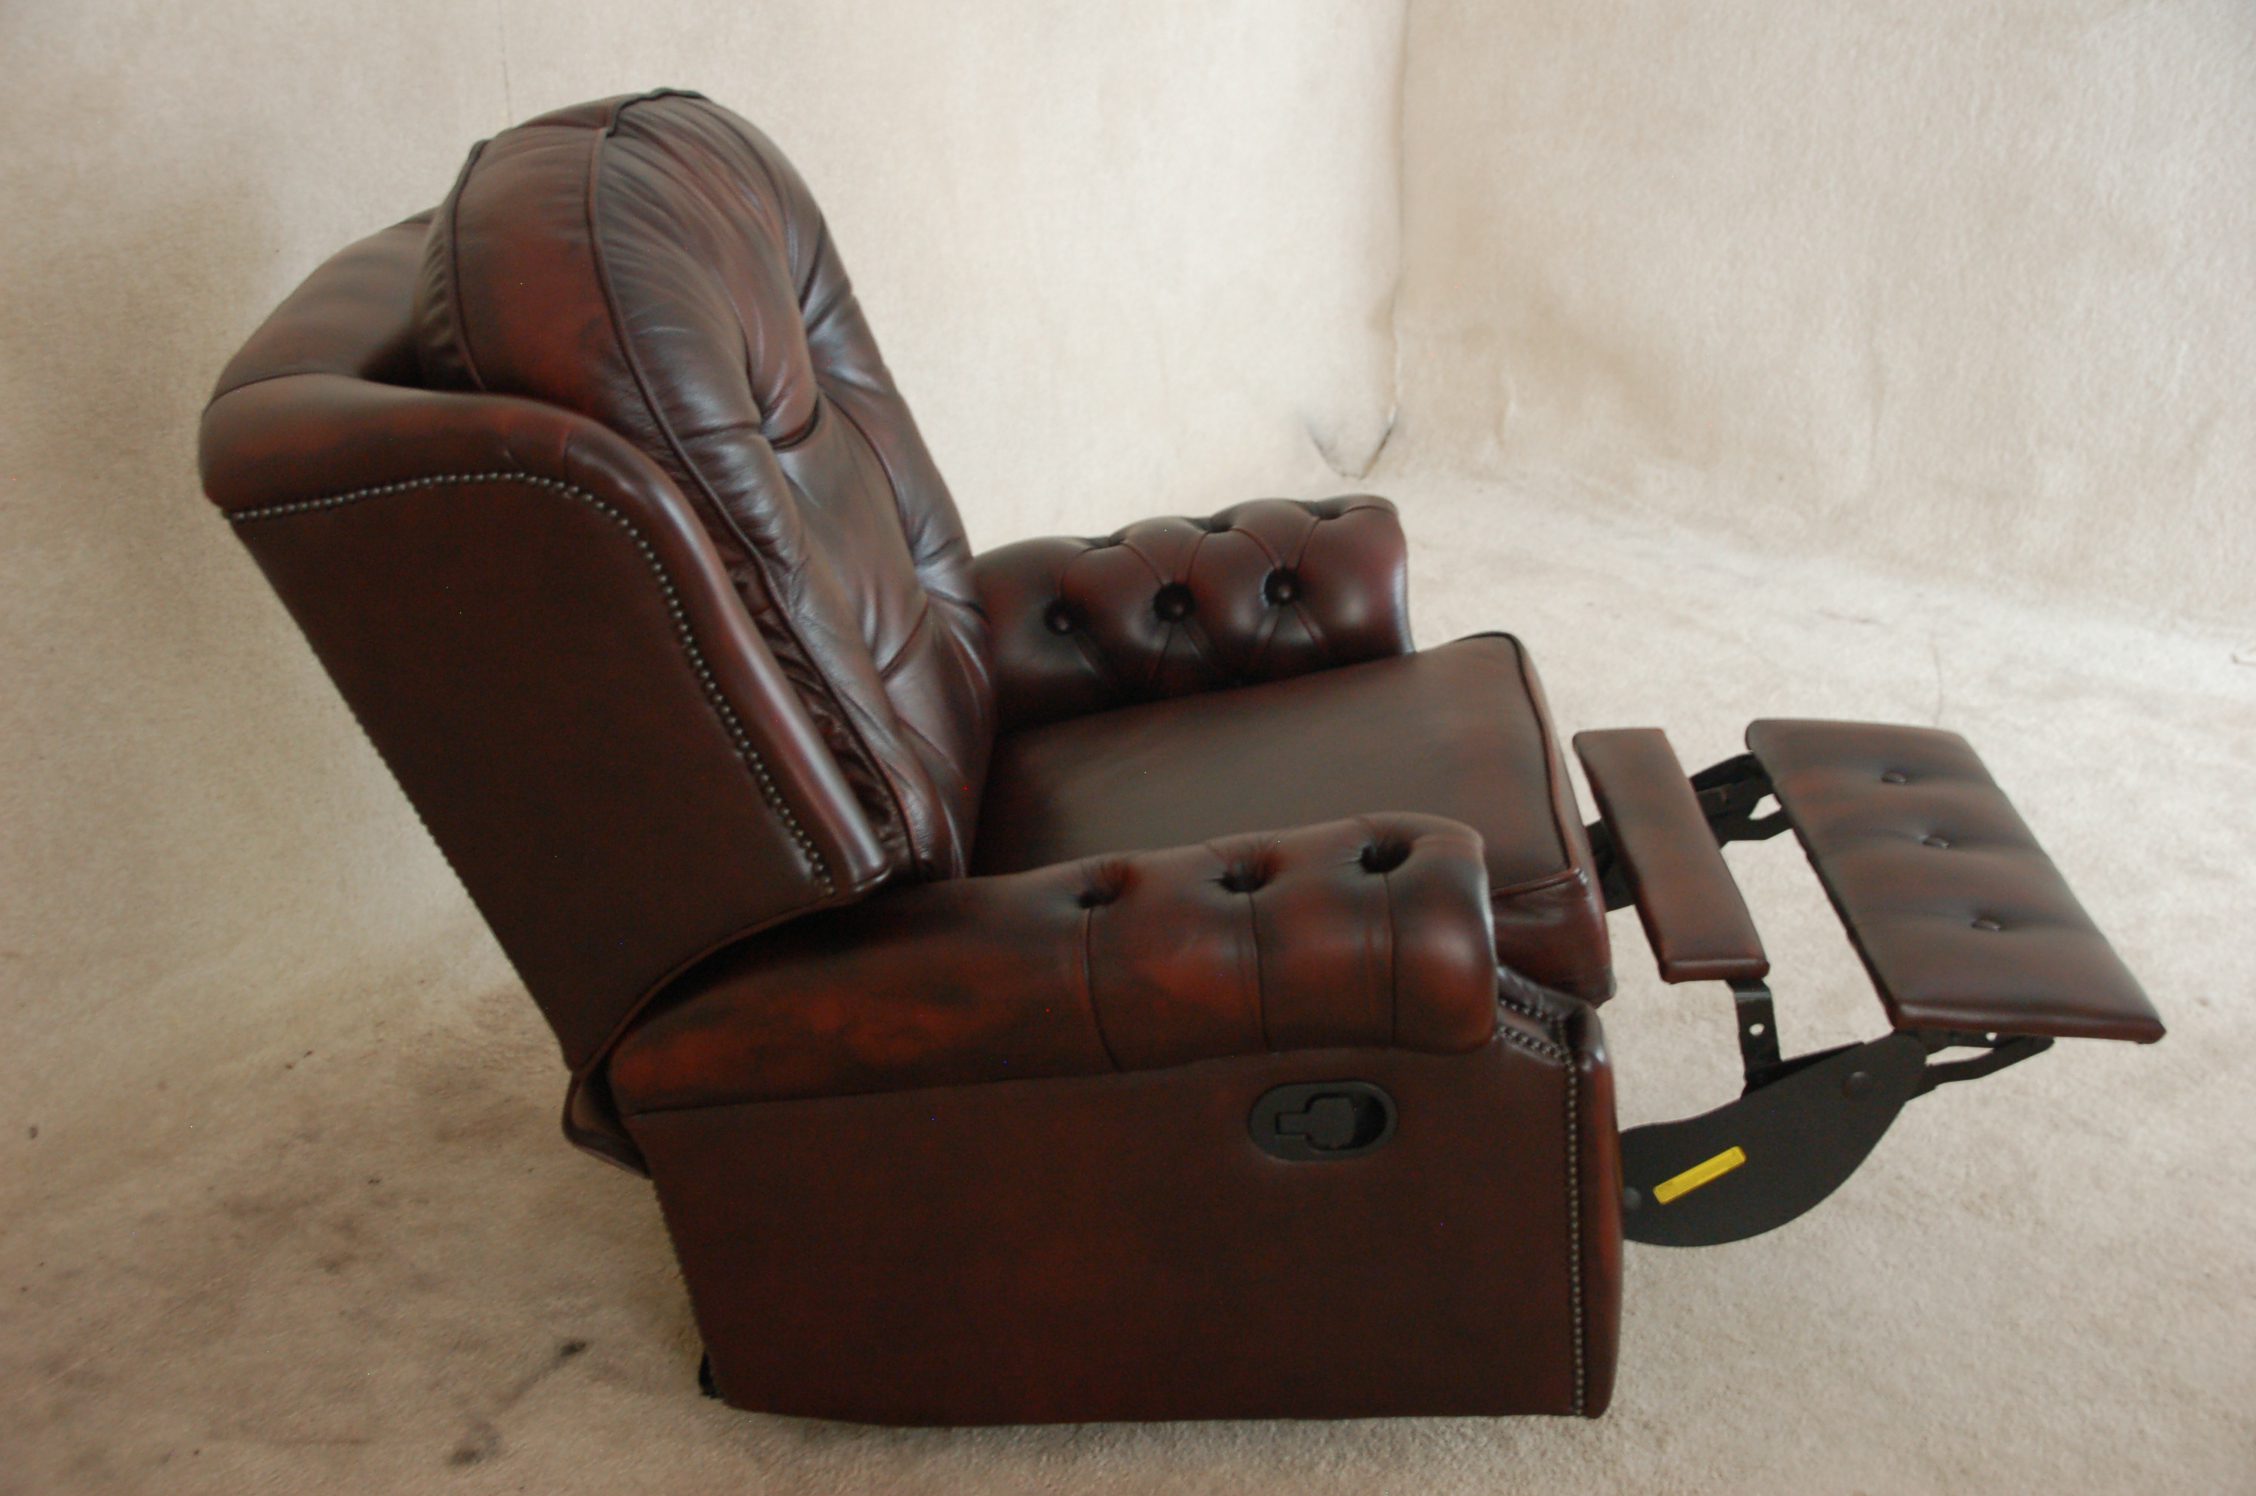 handbediend chesterfield relax fauteuil gebruikt